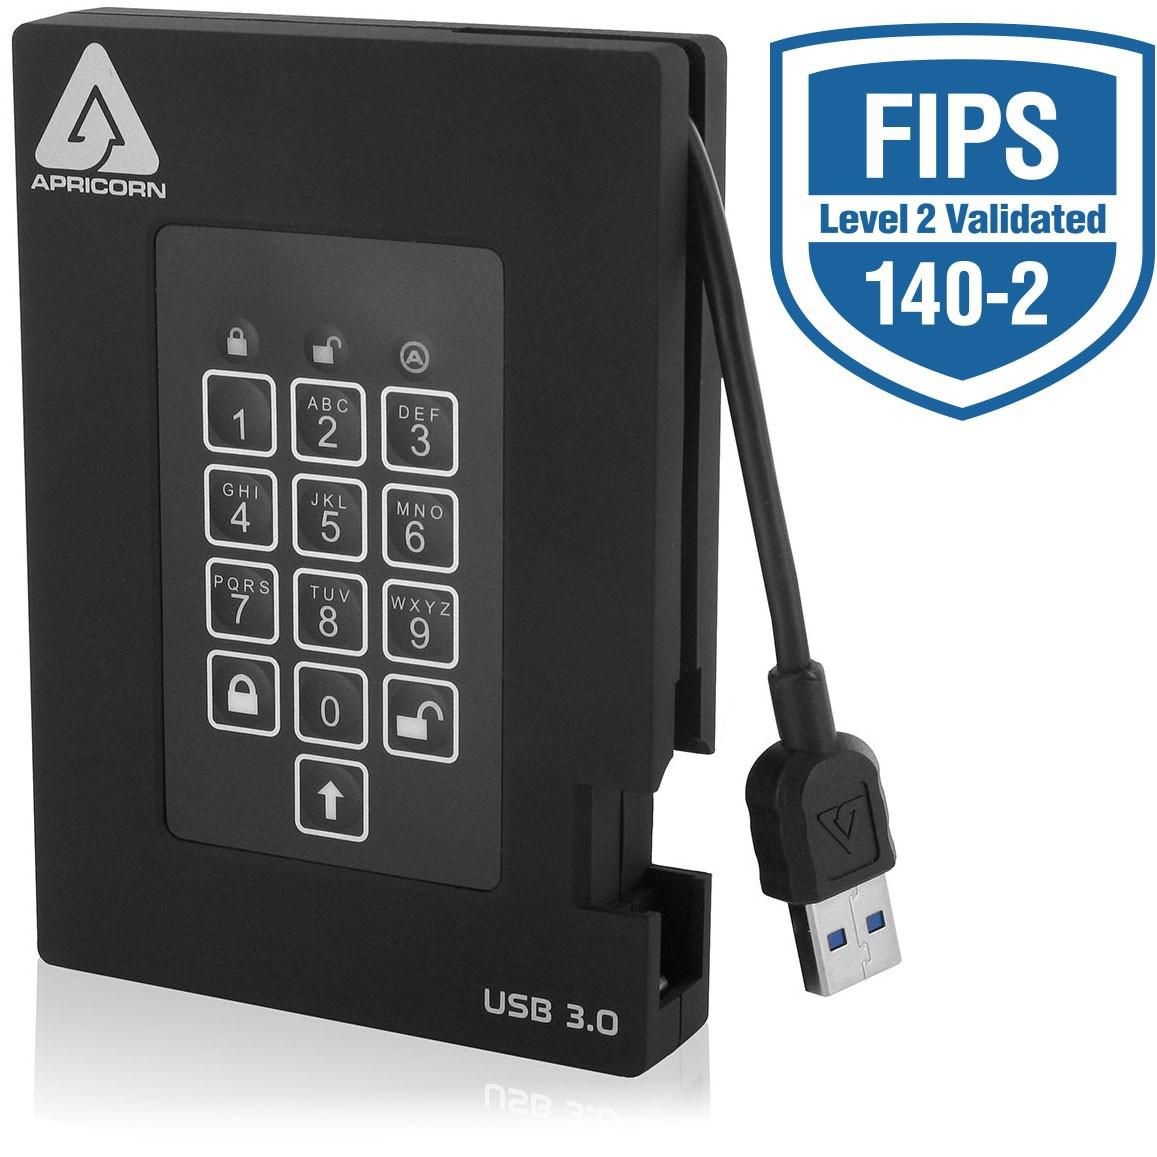 Apricorn A25-3PL256-2000F HDD 2TB Encrypted USB 3.0 